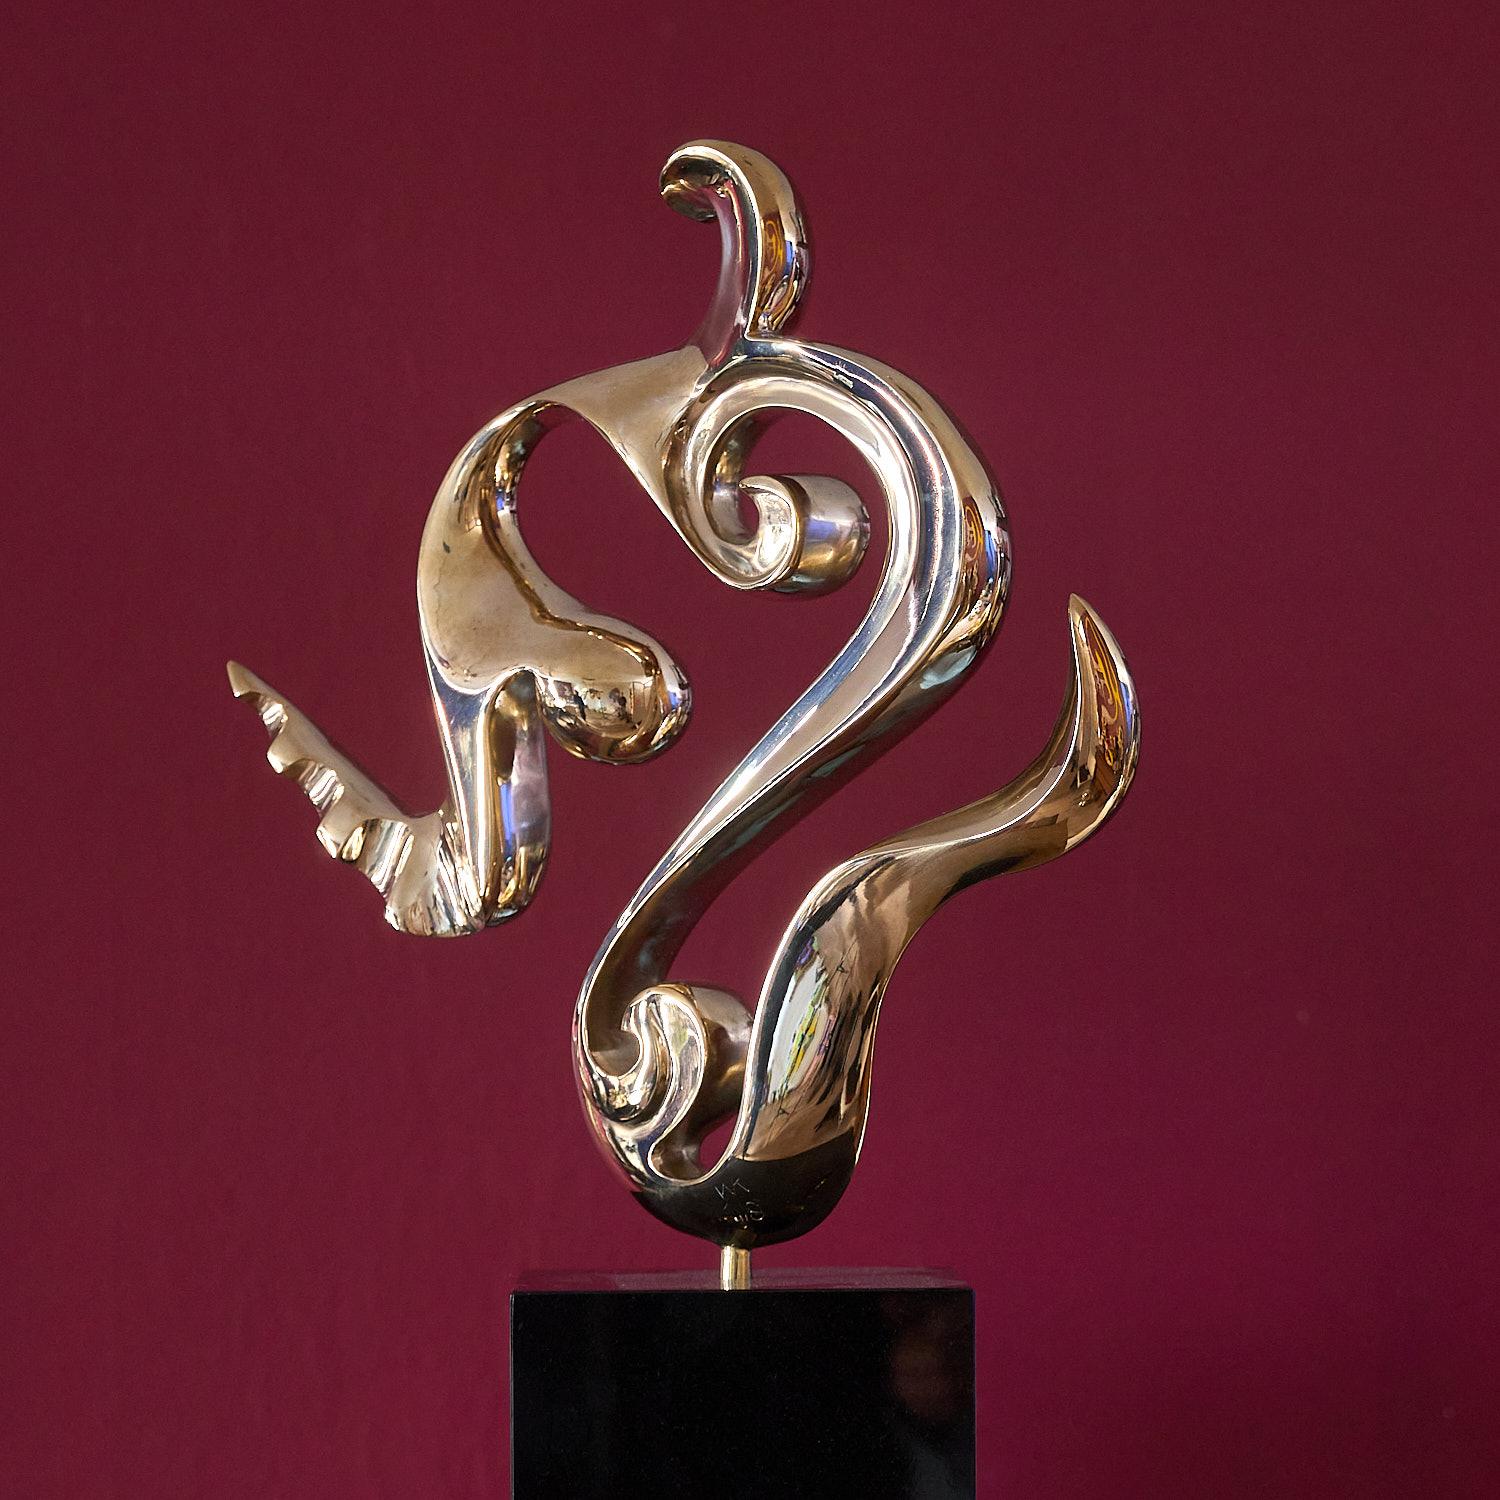  Flow, bronze polished modern contemporary art sculpture 21st century - Abstract Sculpture by Jan Willem Krijger